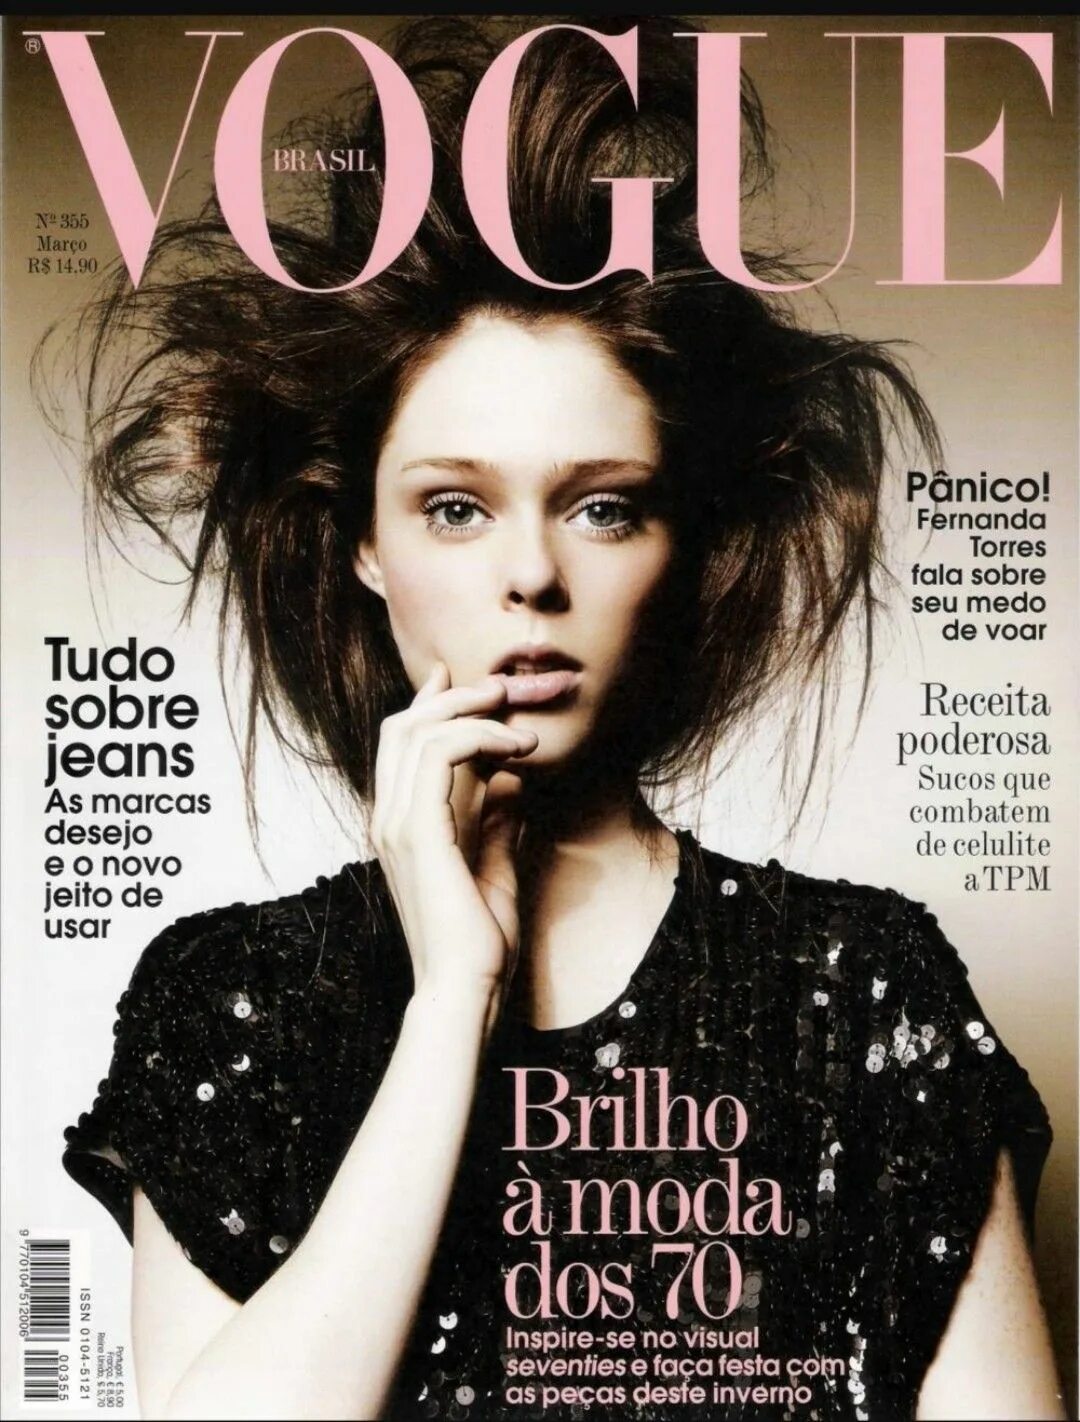 Новые современные журналы. Coco Rocha Vogue. Коко Роша 2008. Coco Rocha журнал. Коко Роша обложки журналов.